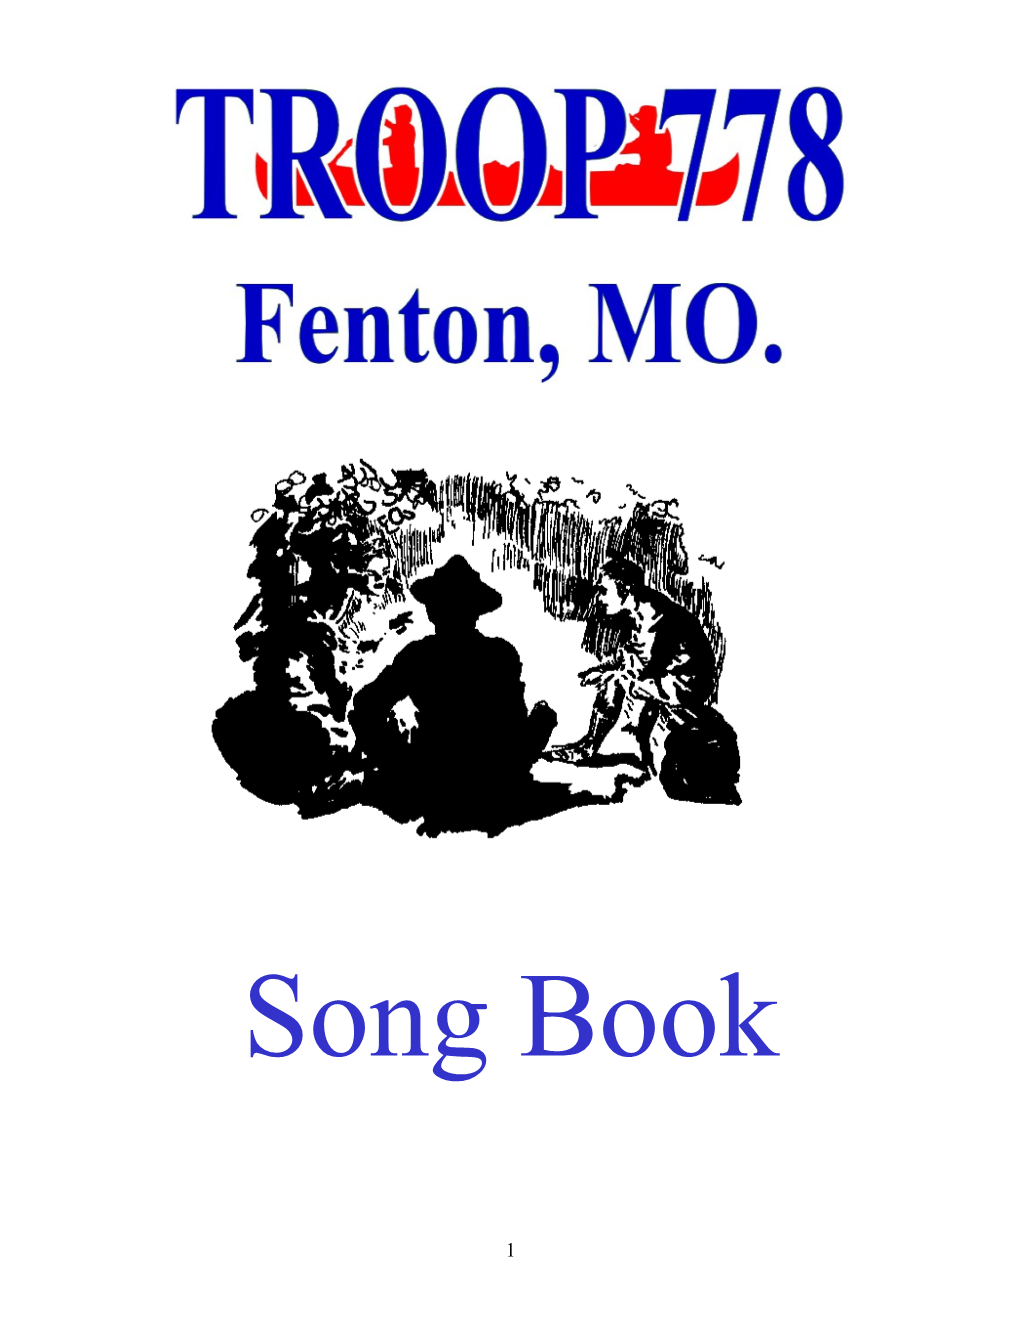 Troop 778 Song Book